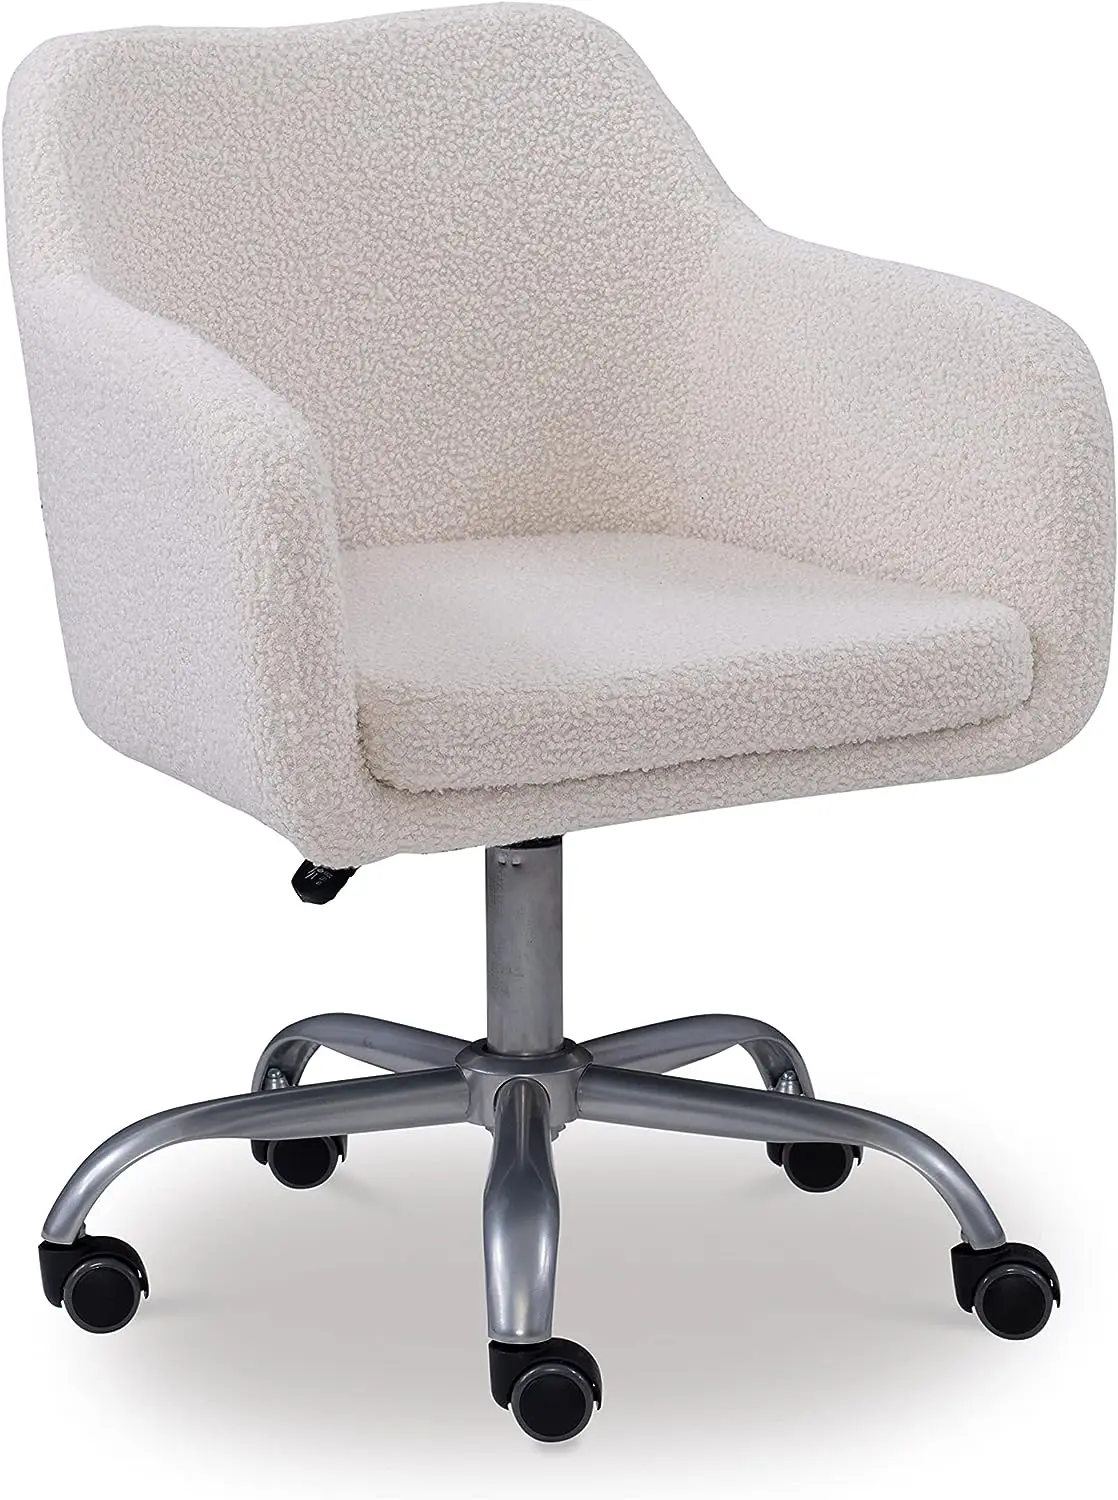 

Декоративные изделия, офисный стул Brooklyn Sherpa, цвета слоновой кости